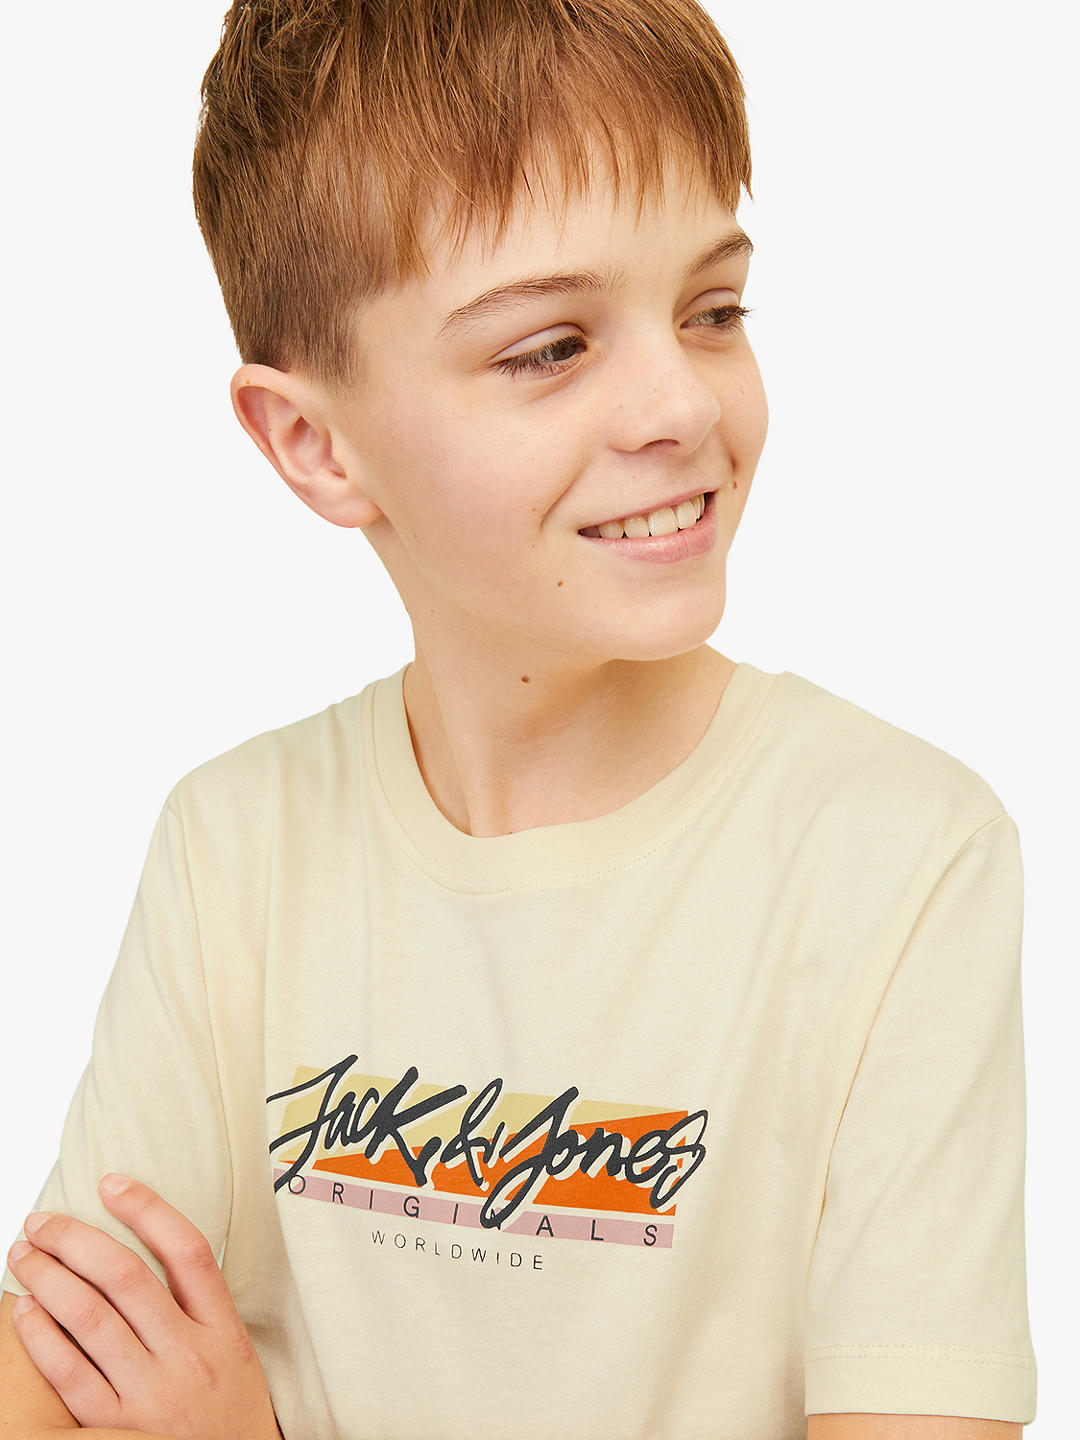 Jack & Jones Kids' Welcome Summer Logo Crew Neck T-Shirt, Yellow